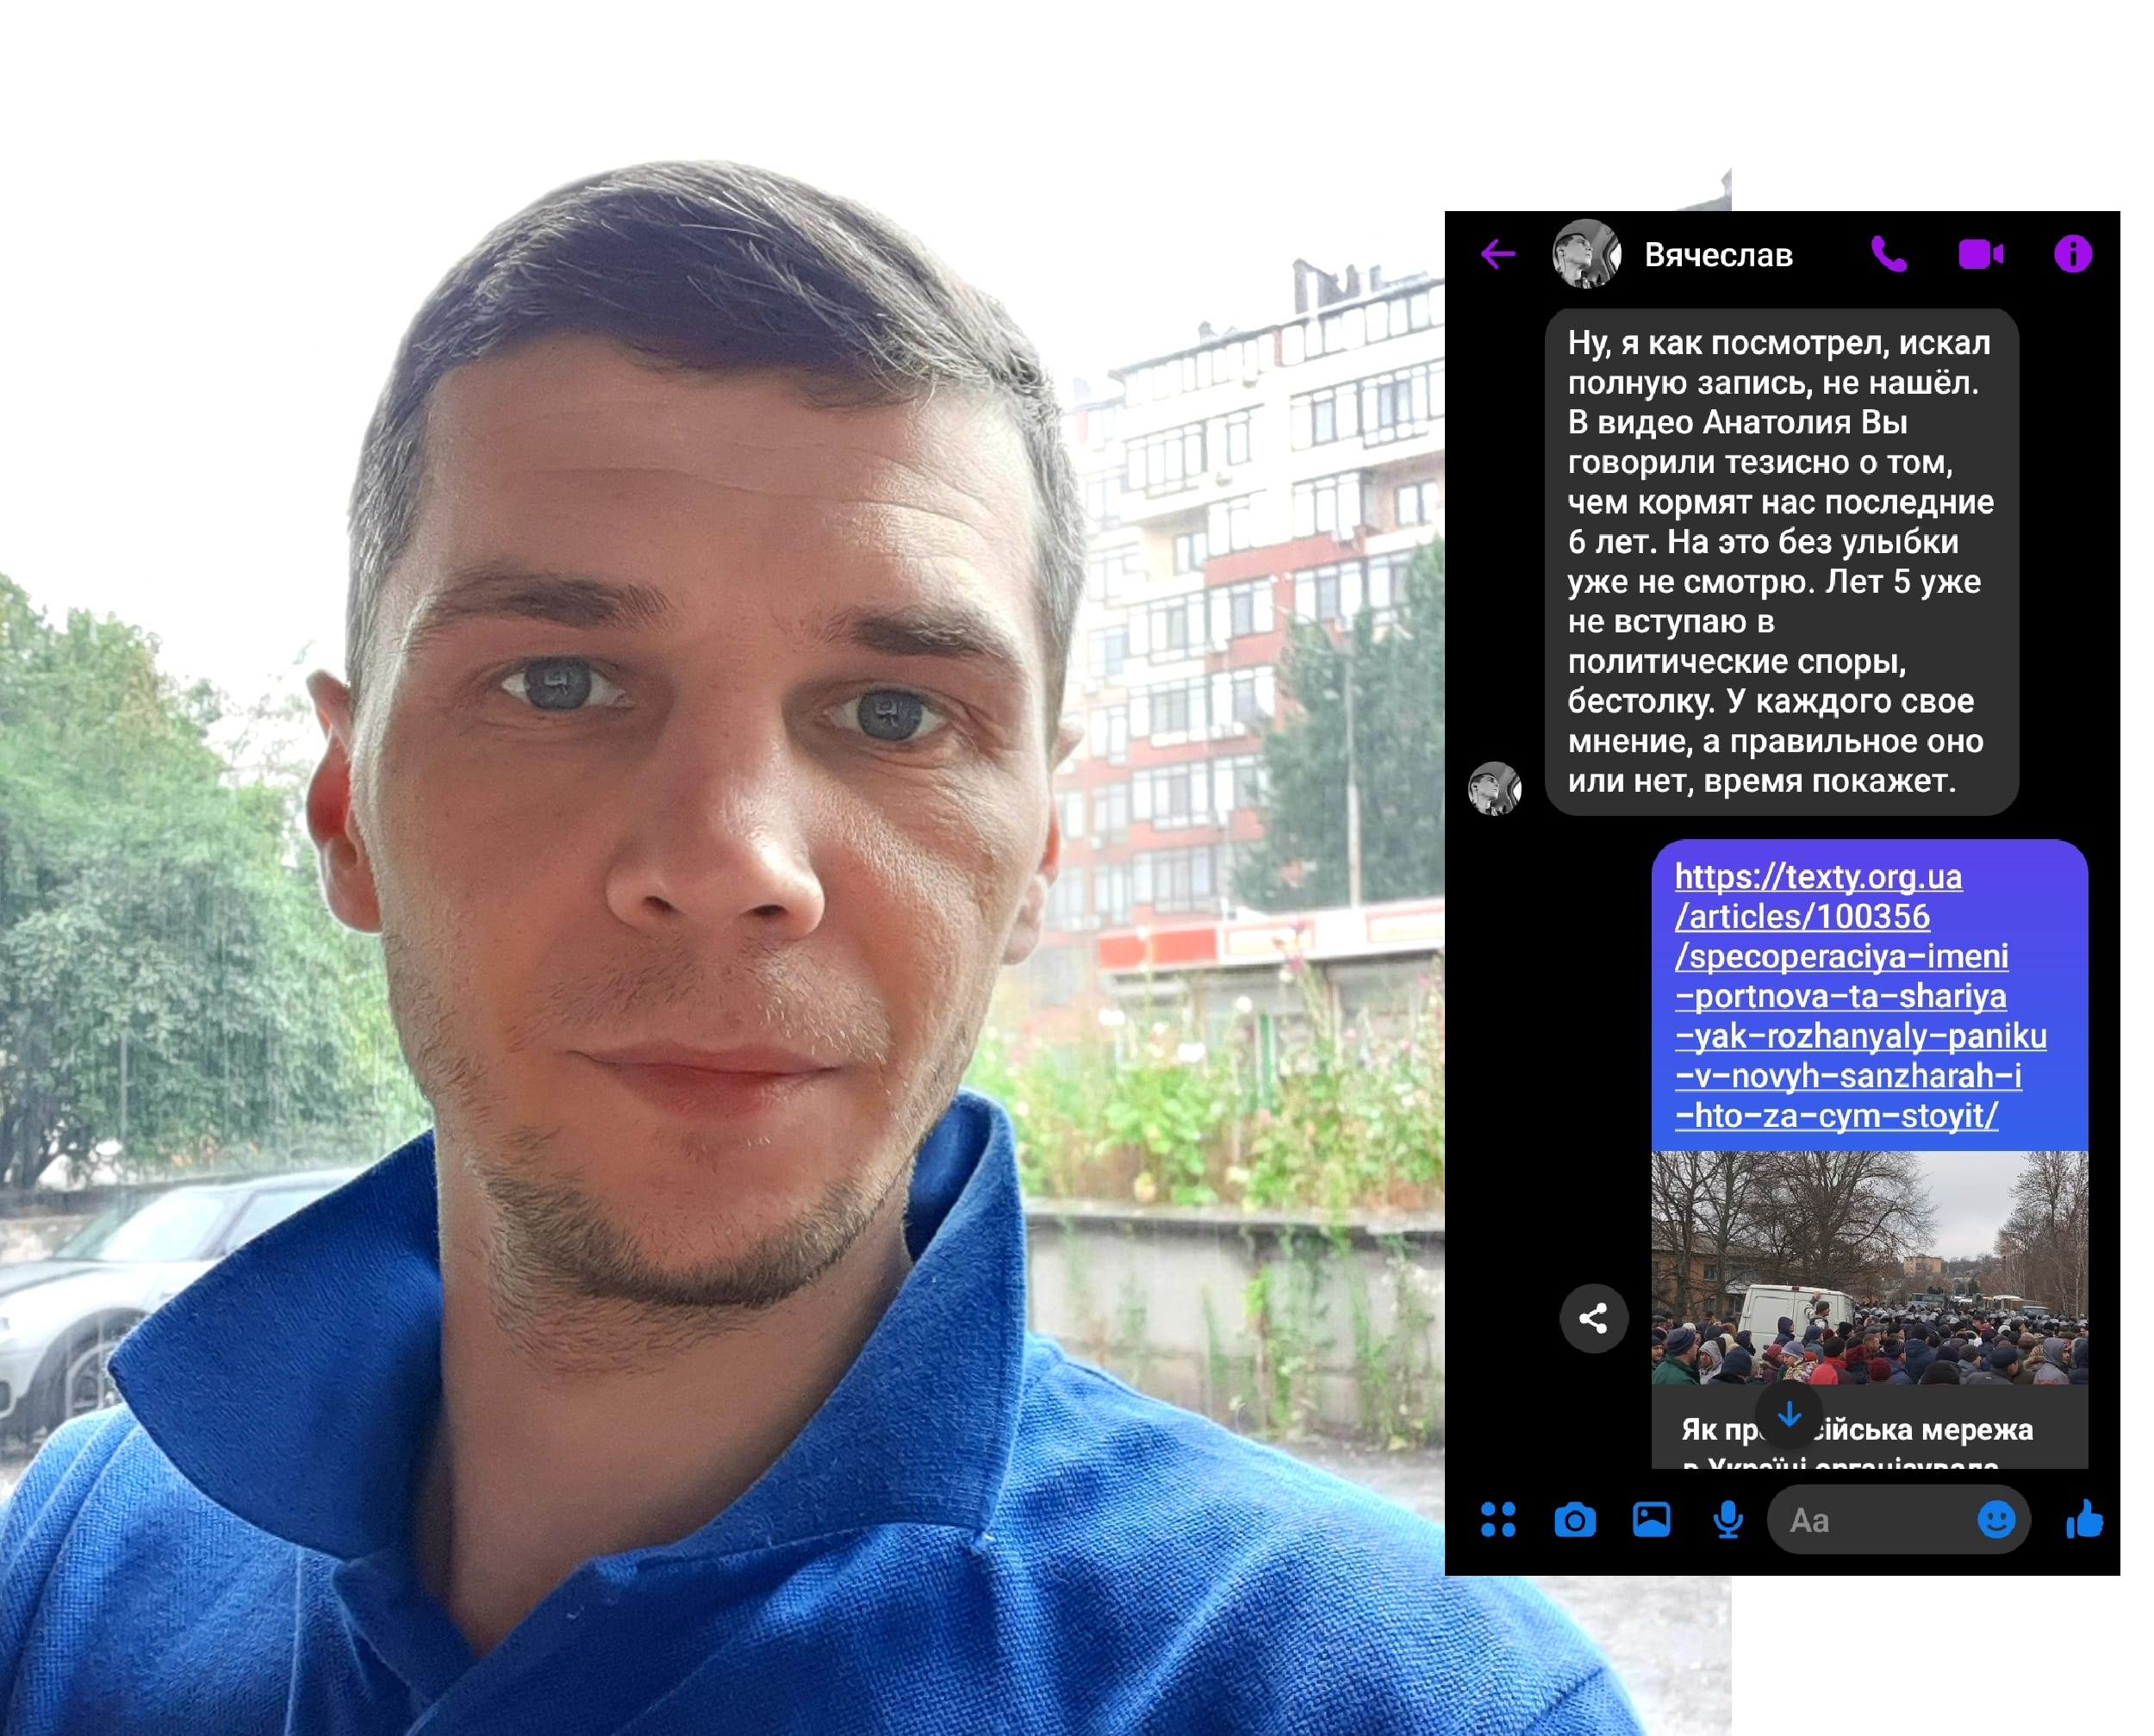 В'ячеслав Мельников, агент із нерухомості з Києва, любить грати в шахи і не любить вести політичні дискусії в інтернеті